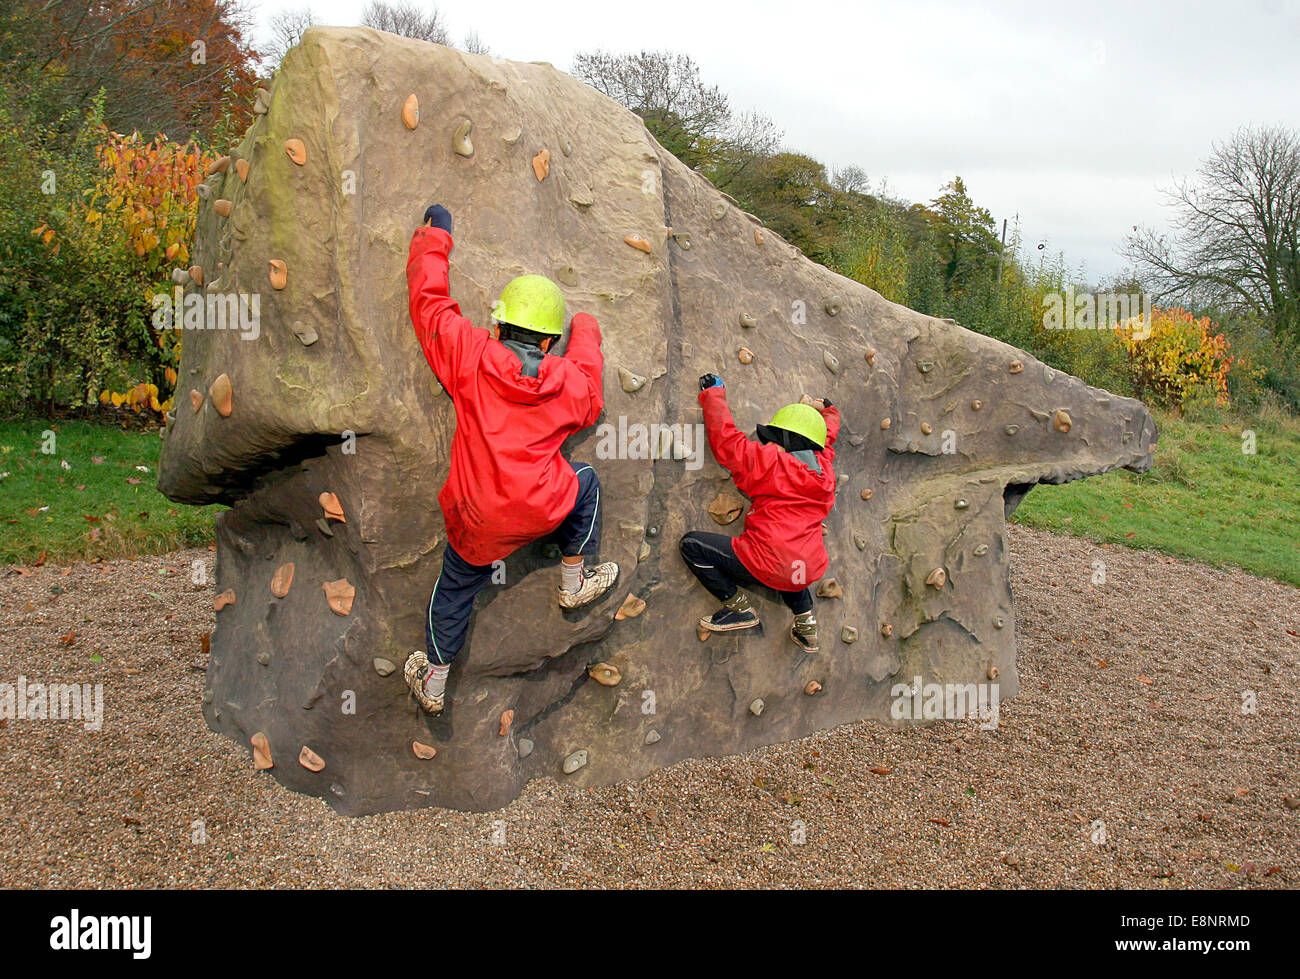 Children in helmets rock climbing outdoors on an artificial boulder Stock Photo